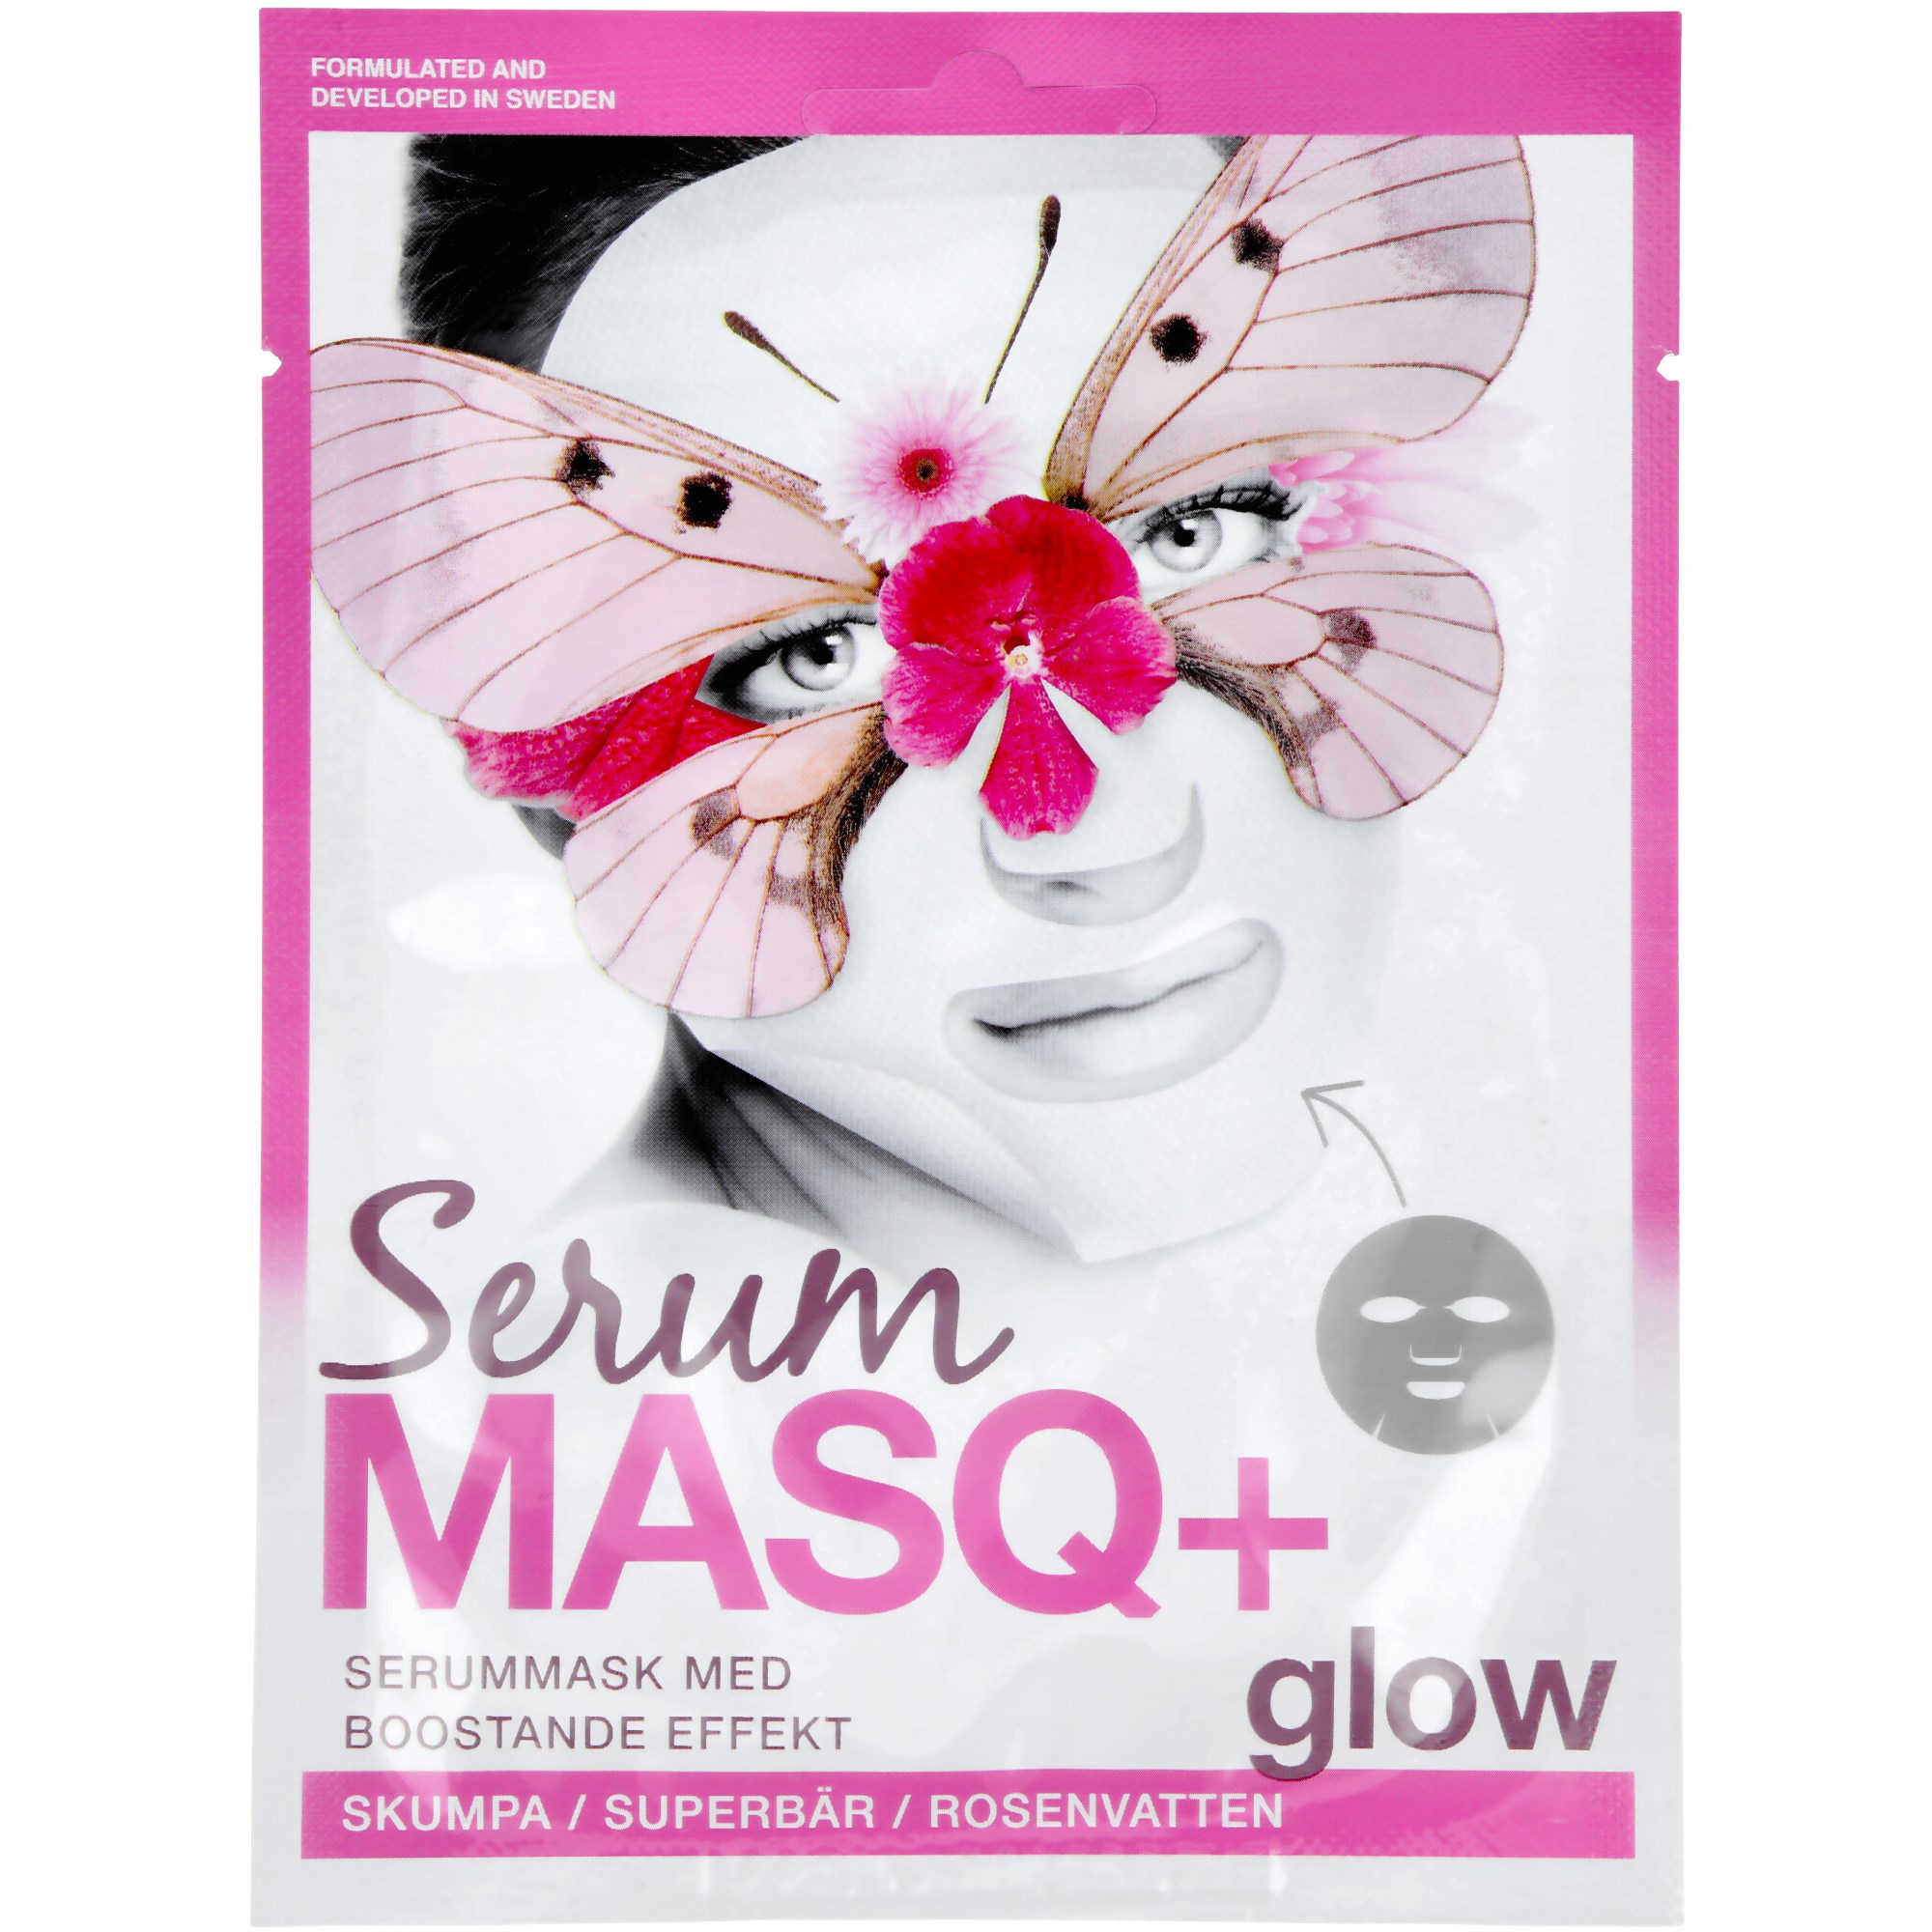 Bilde av Masq+ Serum Glow 1-pack 23 Ml